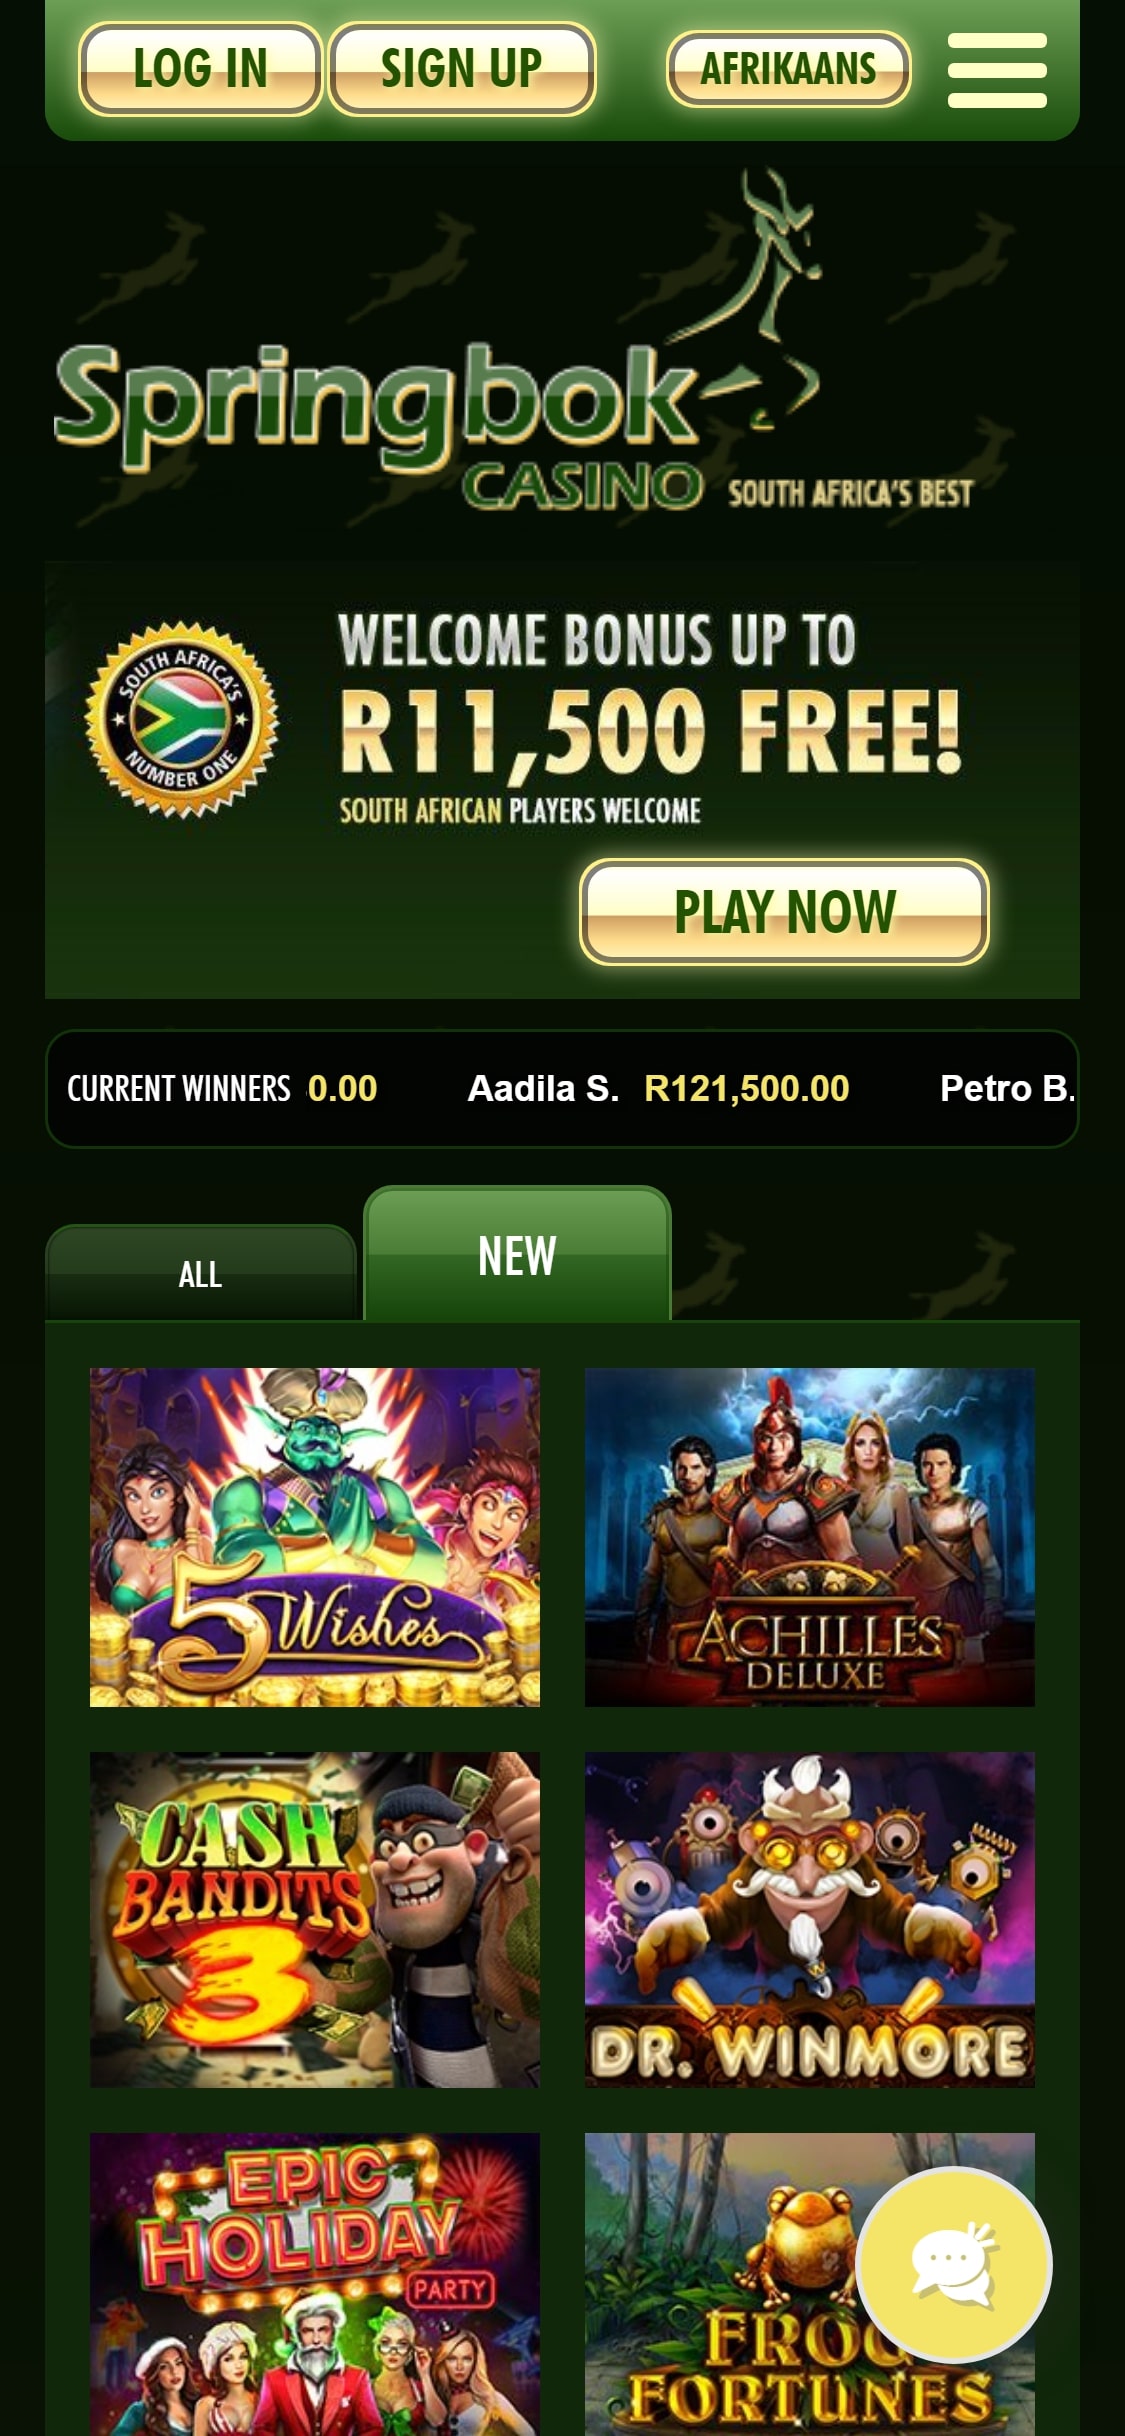 Springbok Casino Mobile Review